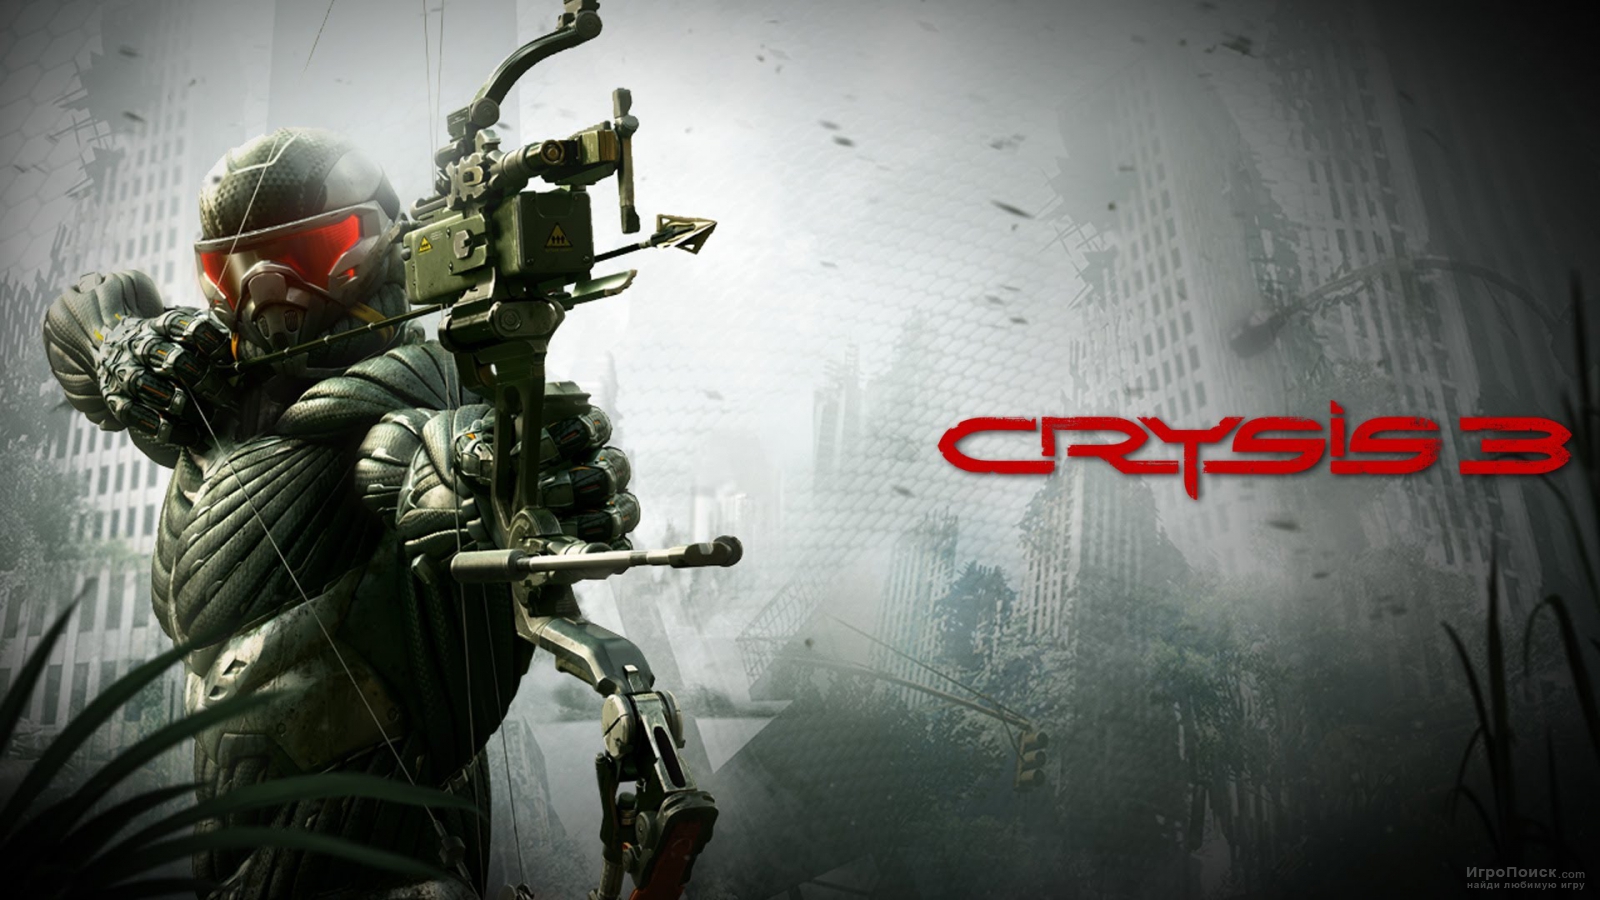 Топовая видеокарта от AMD не смогла потянуть Crysis 3 на высоких настройках графики